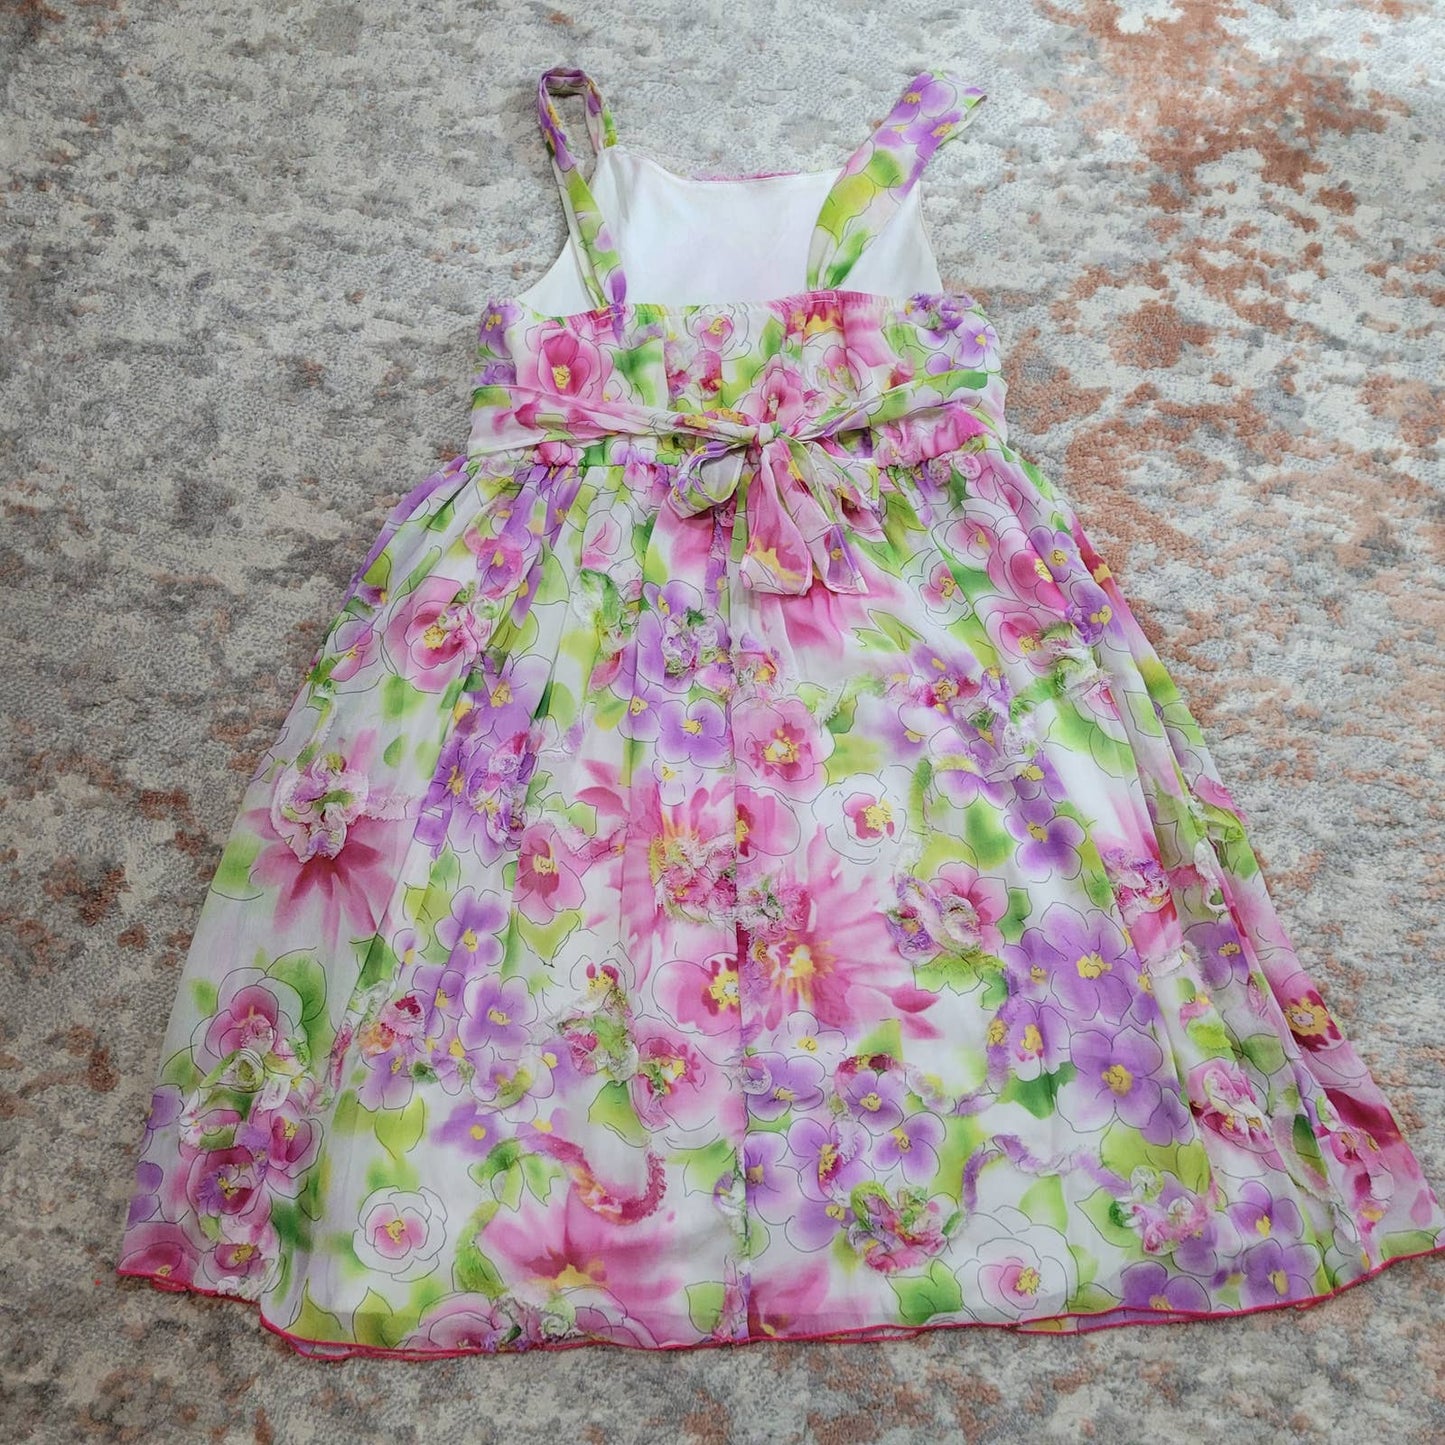 Bloome de Jeune Fille Spring Floral Dress - Size 14